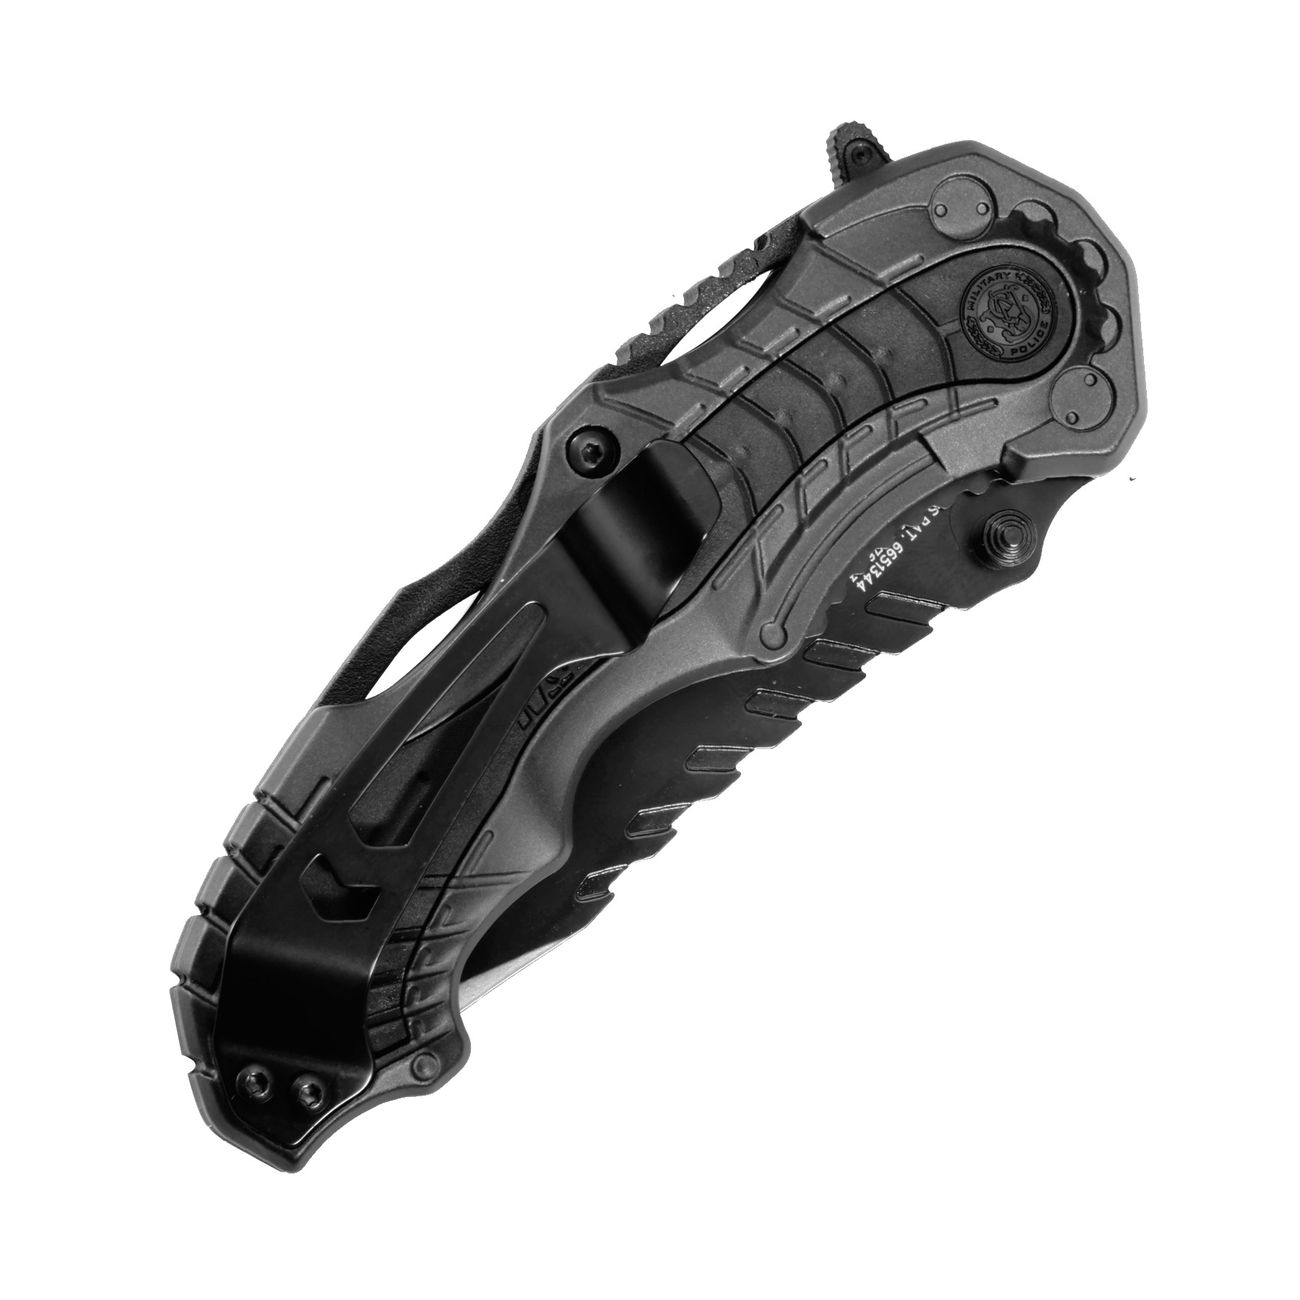 Smith & Wesson Einhandmesser MP6 grau/schwarz Bild 1